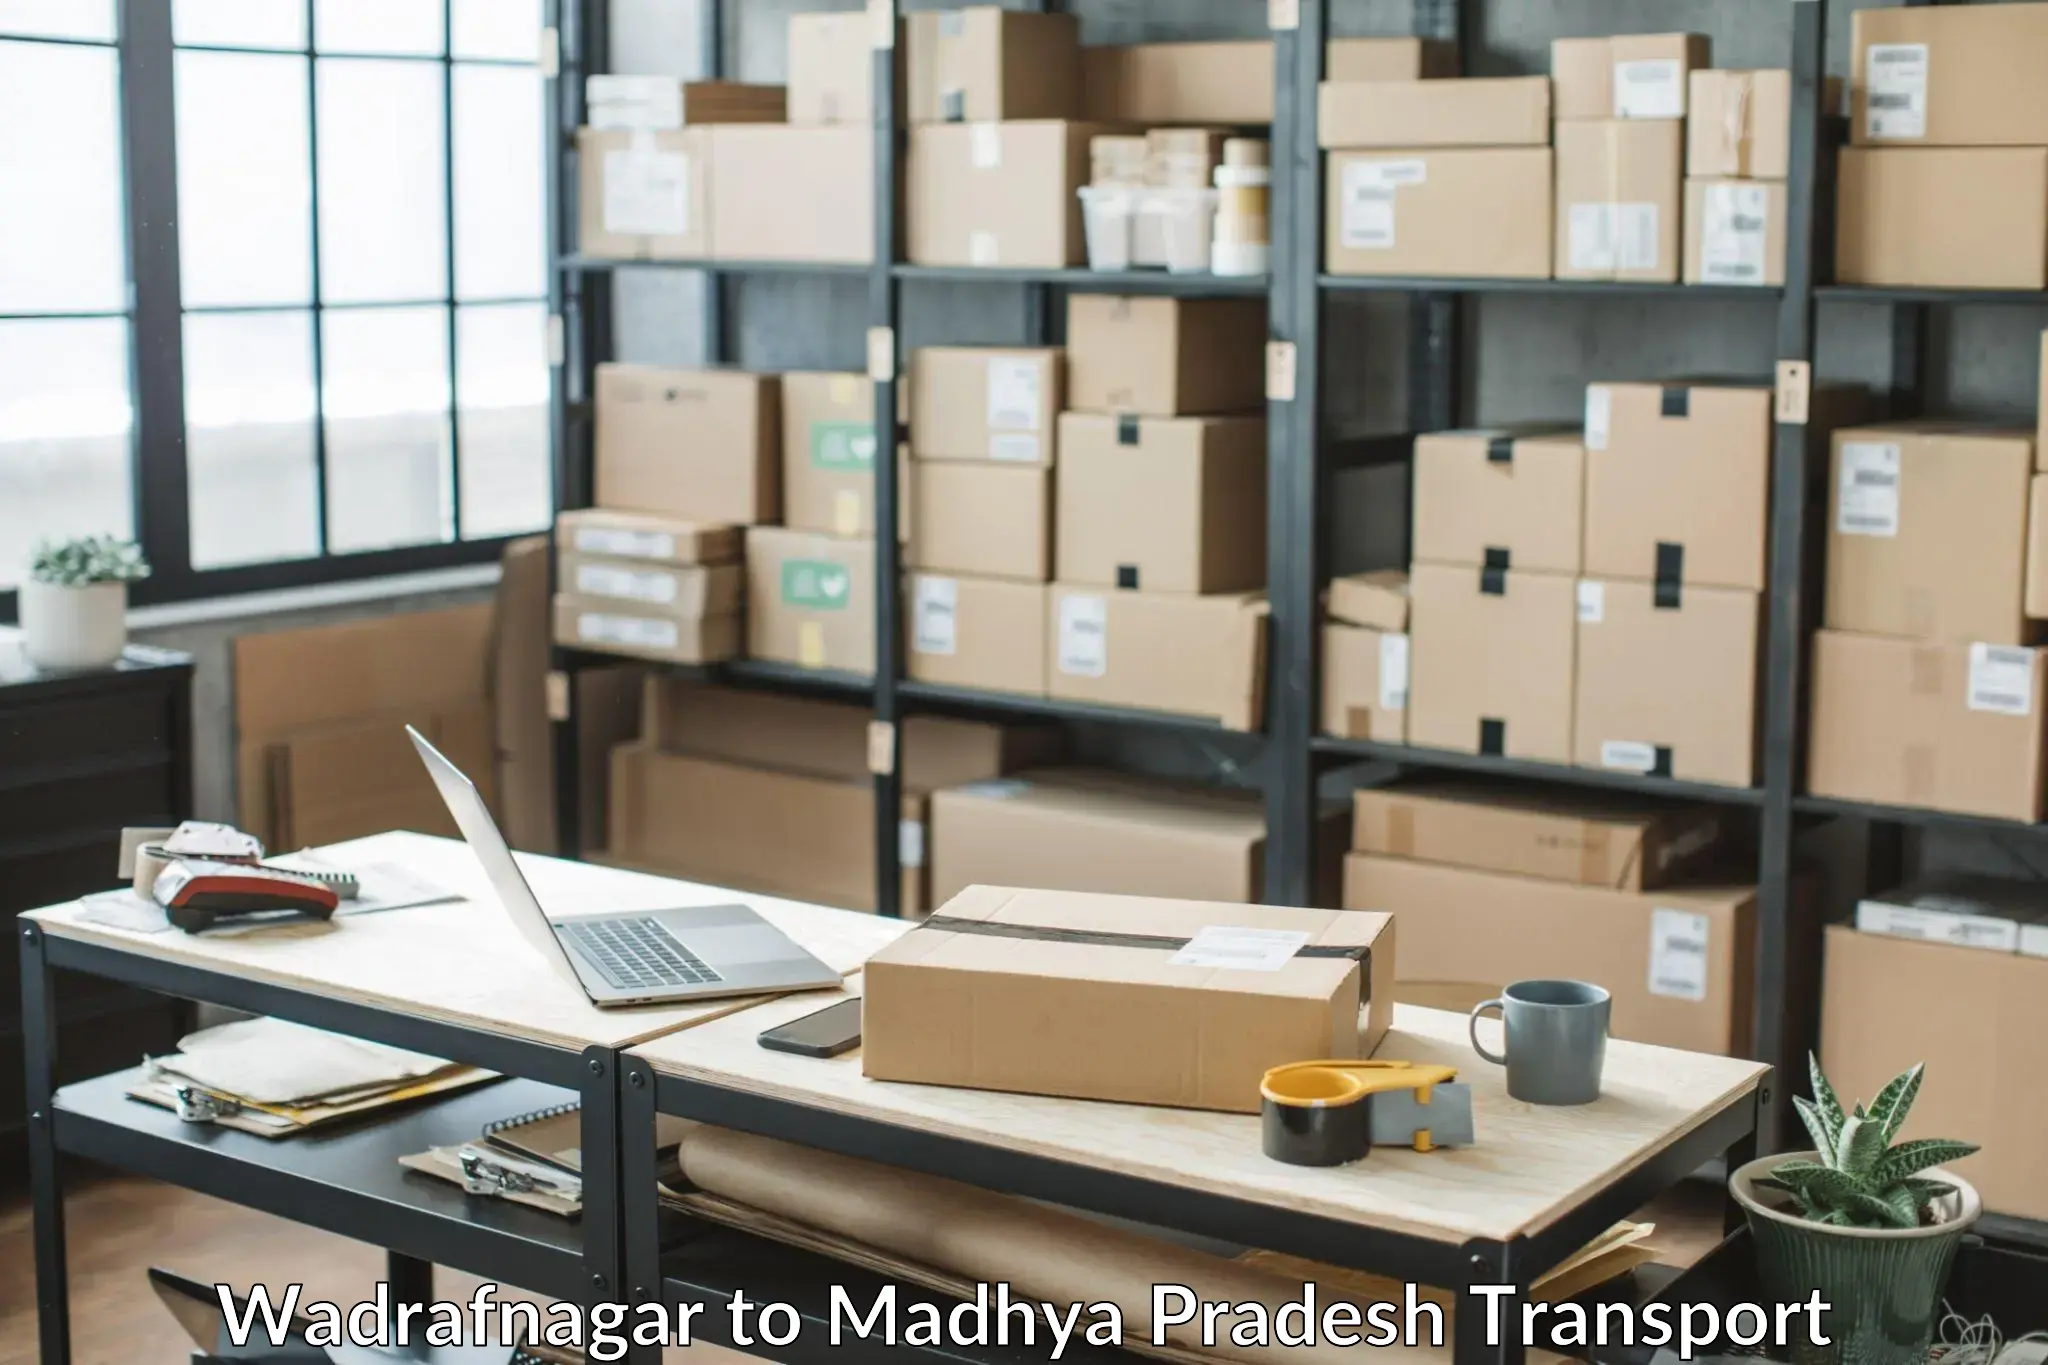 Daily parcel service transport Wadrafnagar to Mandsaur